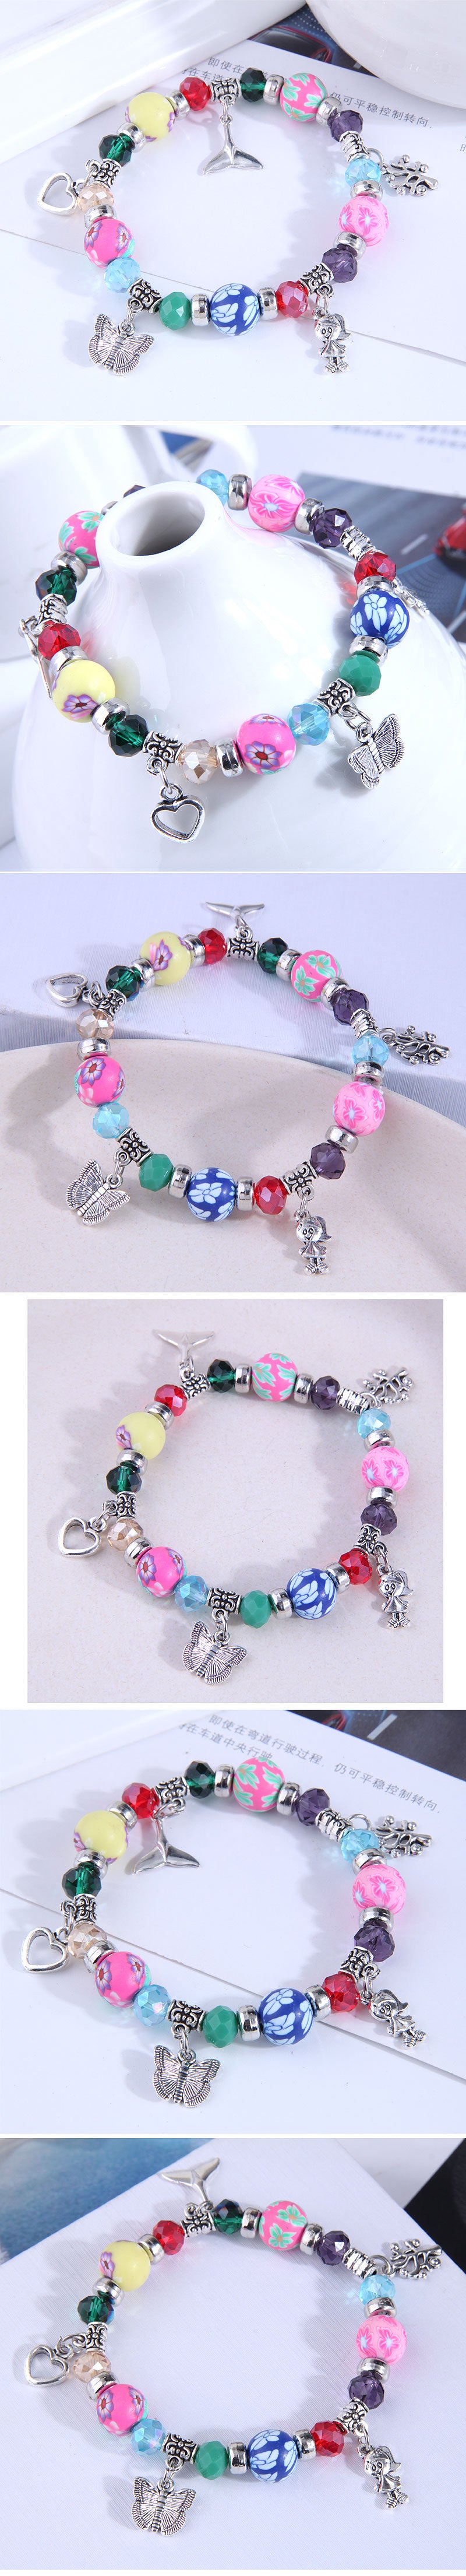 Fashion Multi-element Pendant Colorful Beads Alloy Acrylic Bracelet